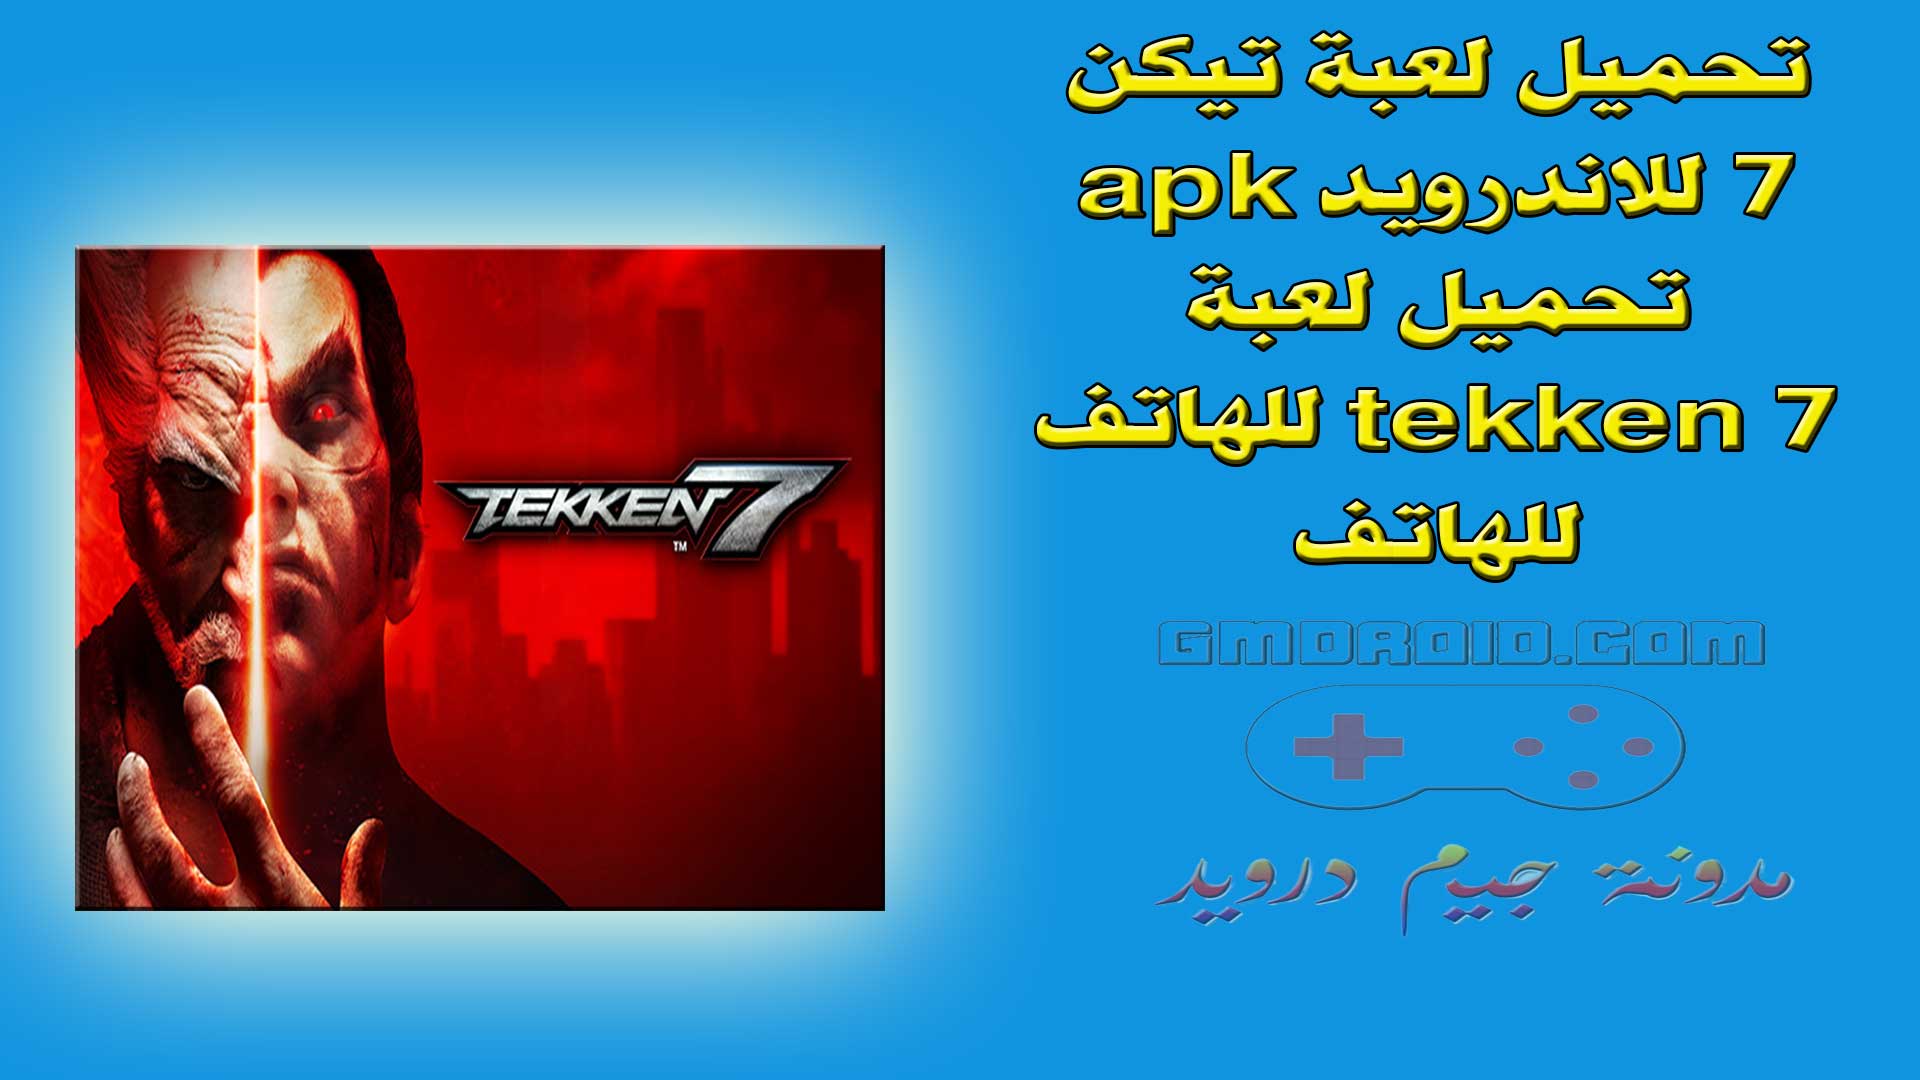 تحميل لعبة تيكن 7 للاندرويد apk - تحميل لعبة tekken 7 للهاتف للهاتف